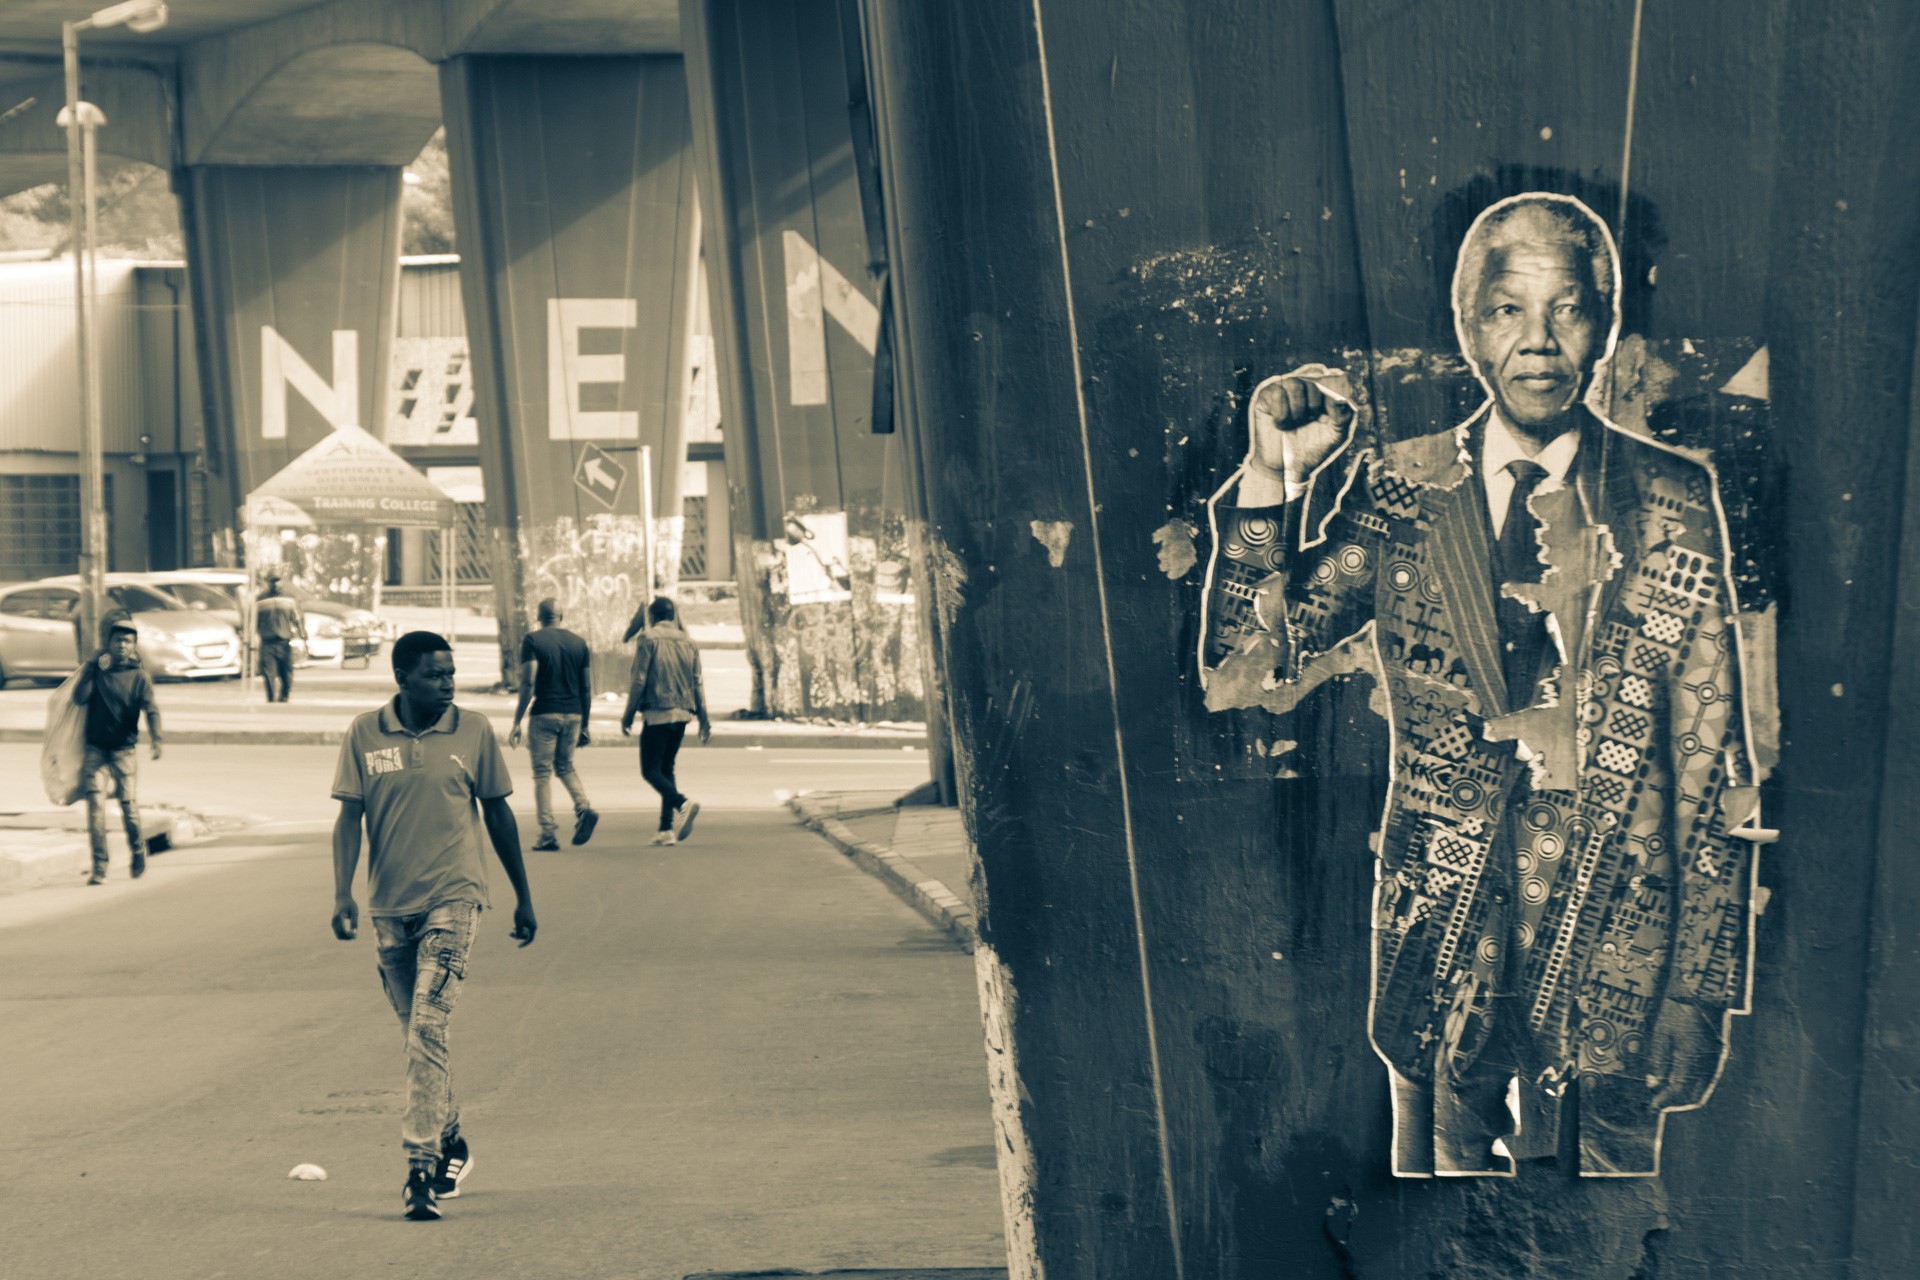 Street scene in Johannesburg with Nelson Mandela poster